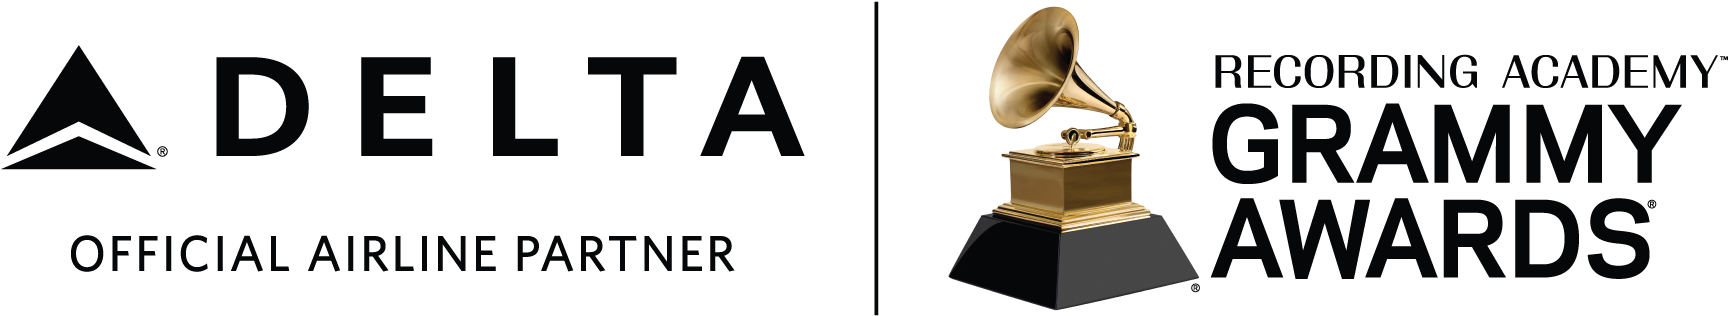 Delta Airline Partner Grammy Awards PNG